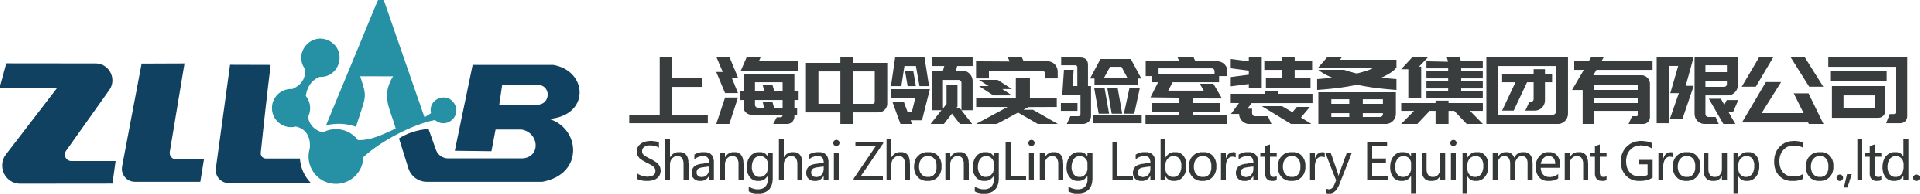 上海中领实验室装备集团有限公司官网